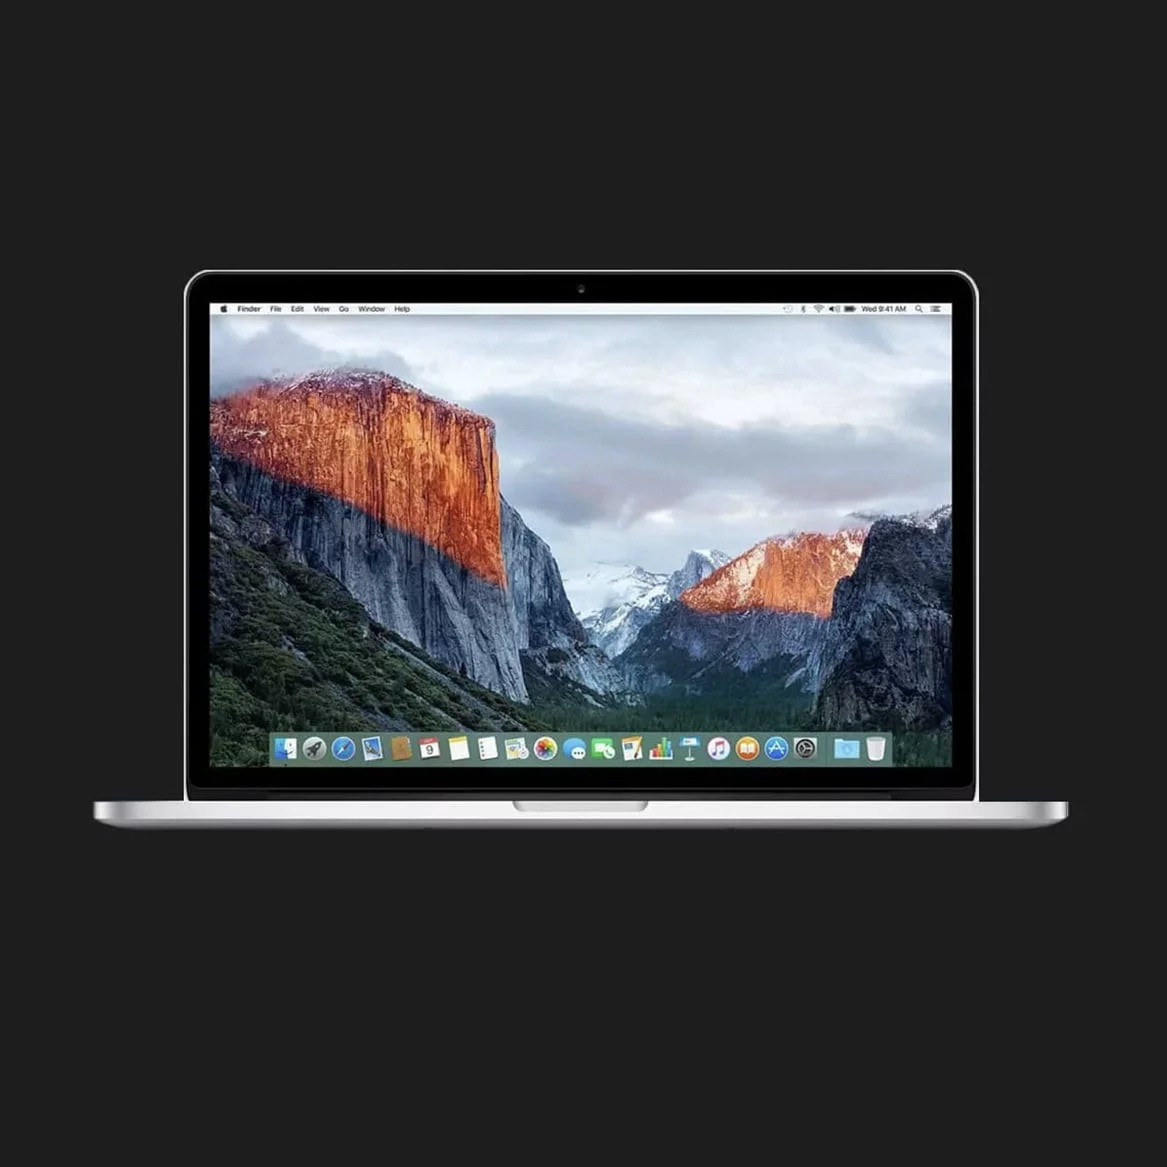 б/у Apple MacBook Pro 15, 2015 (512GB) (MJLT2) (Відмінний стан)